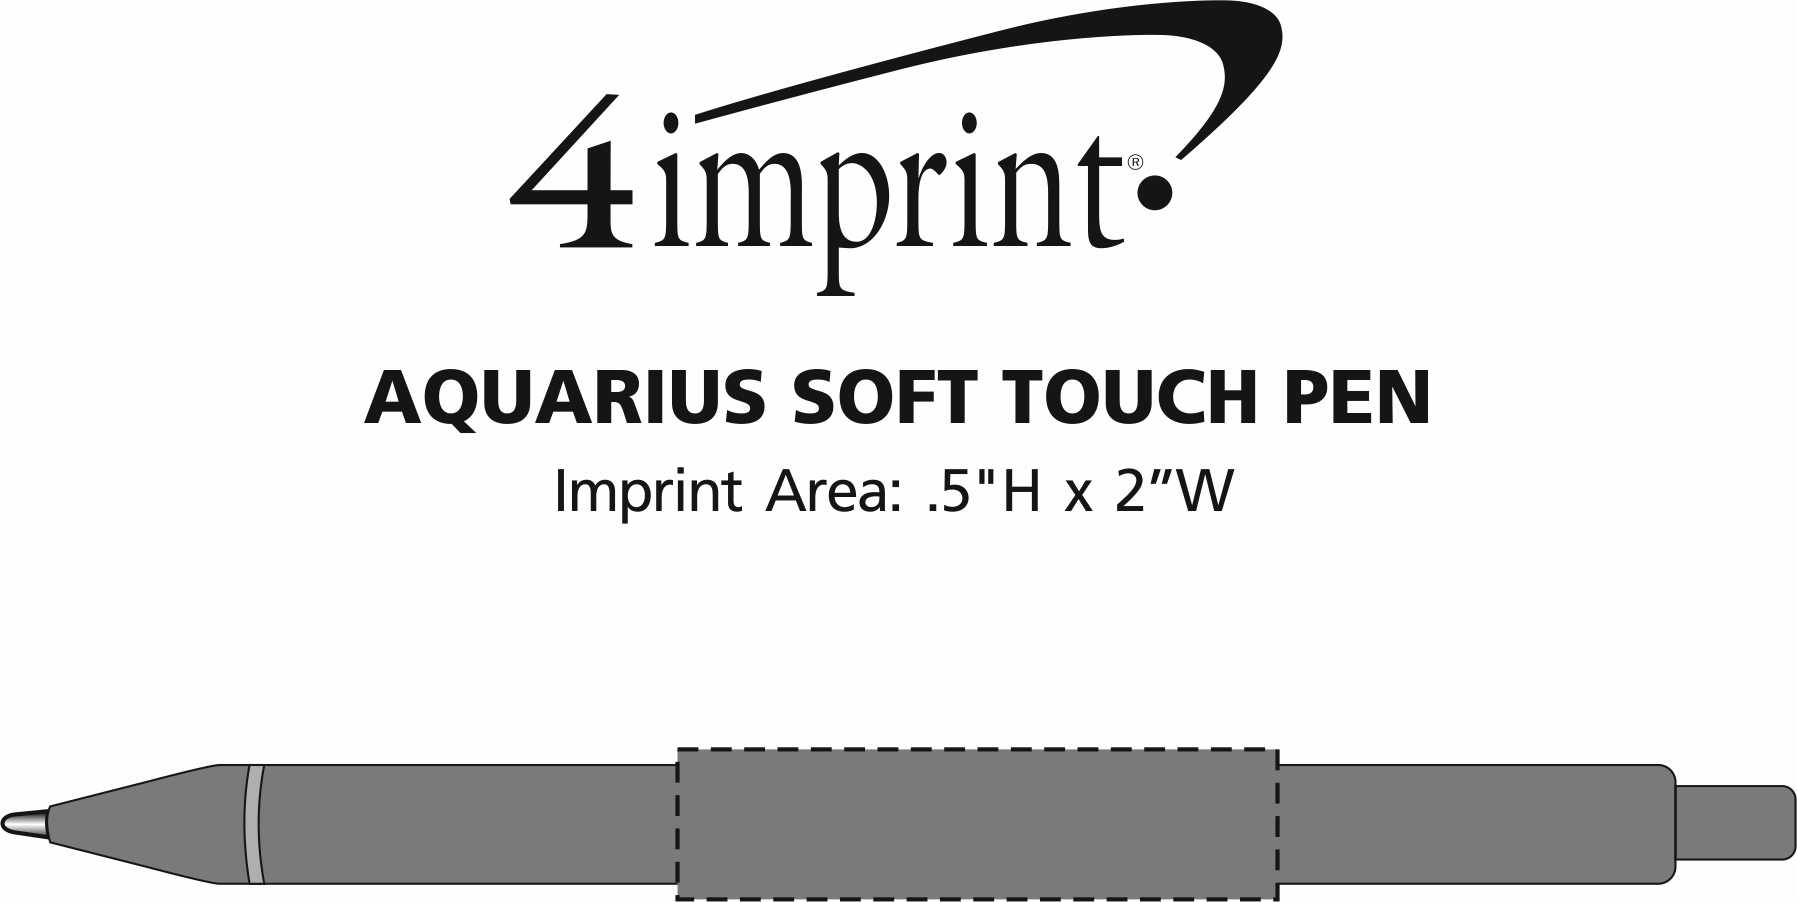 Imprint Area of Aquarius Soft Touch Pen